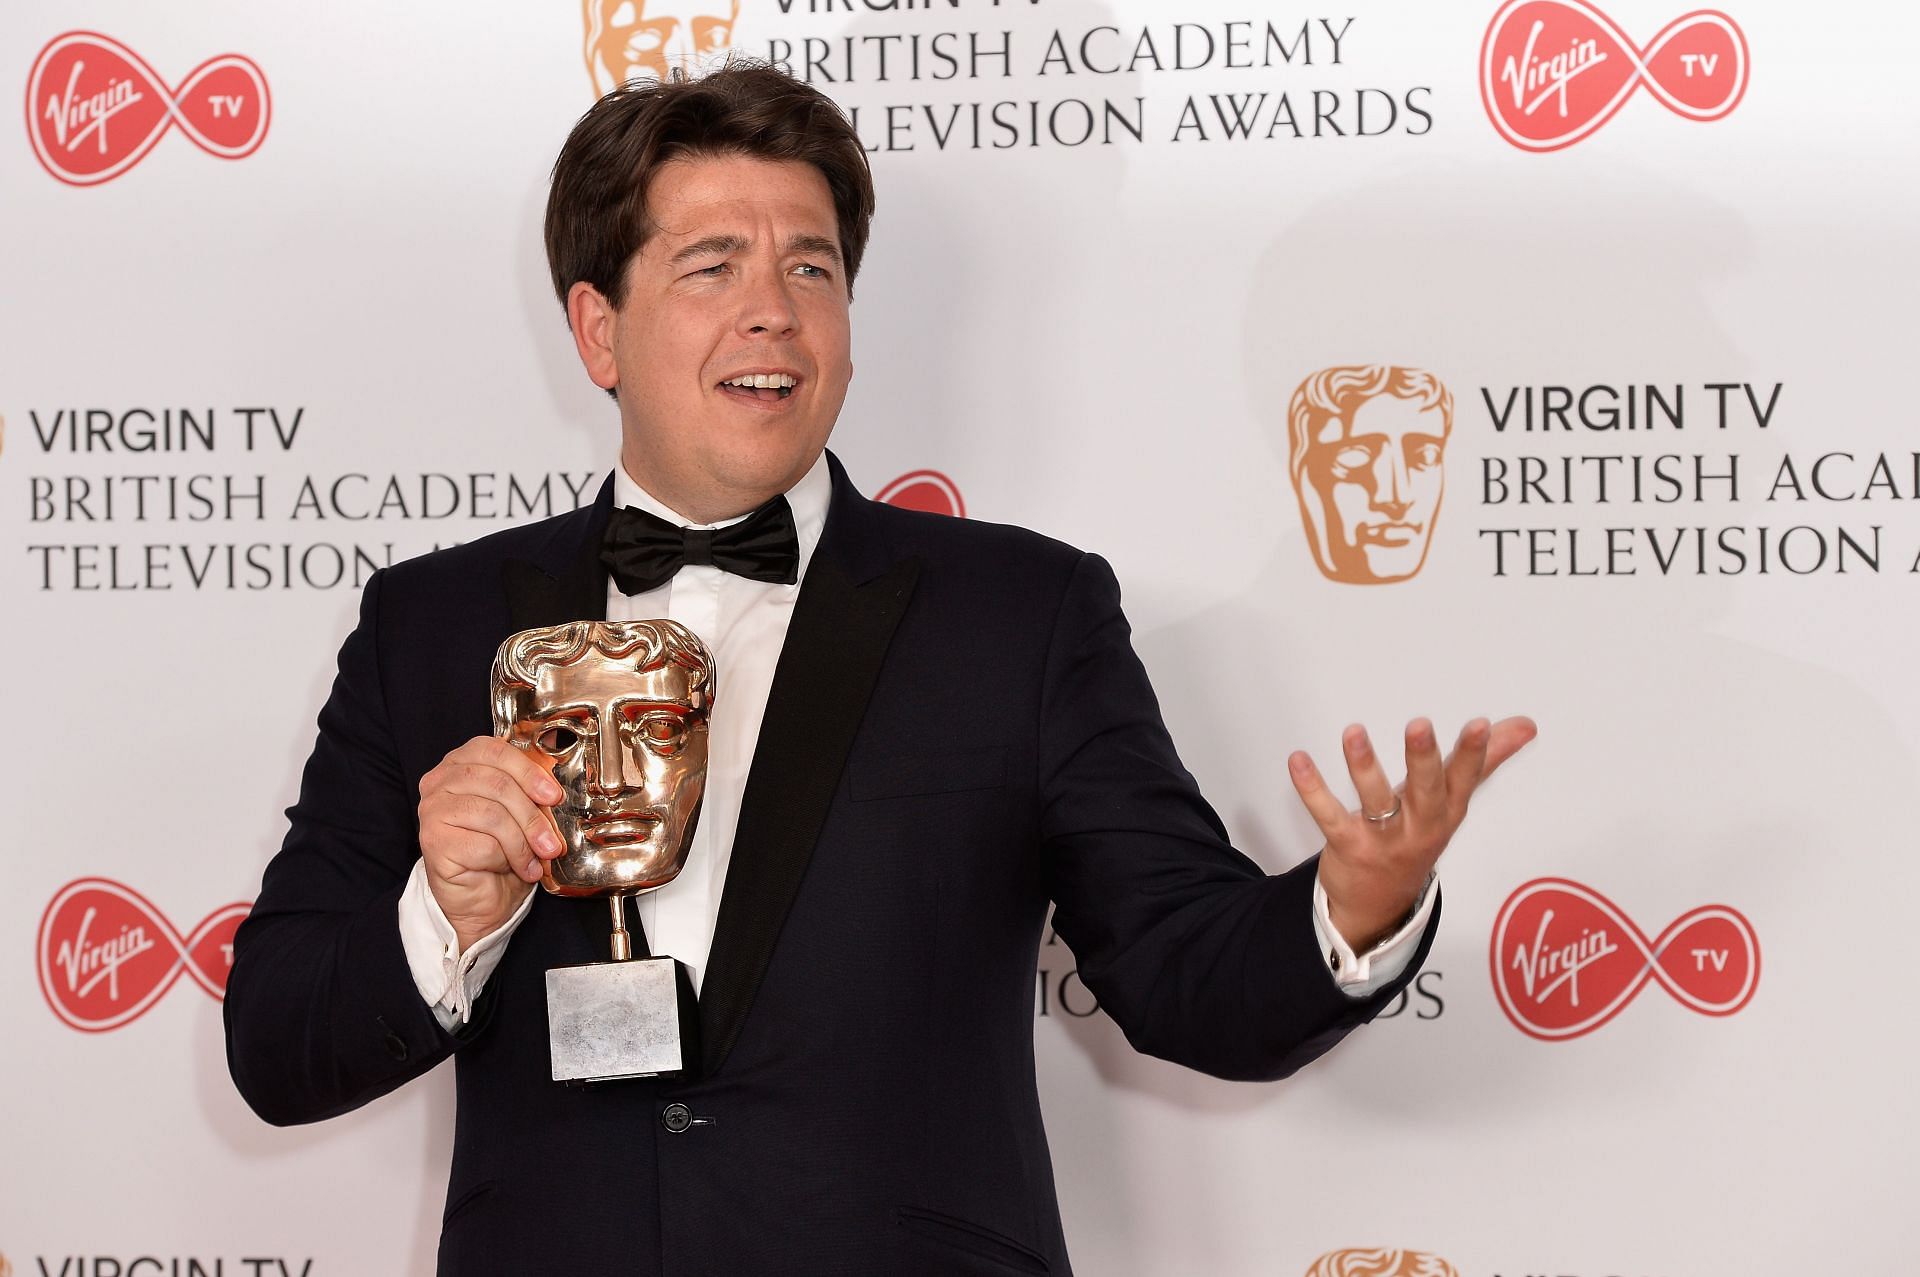 Virgin TV BAFTA Television Awards - Winner